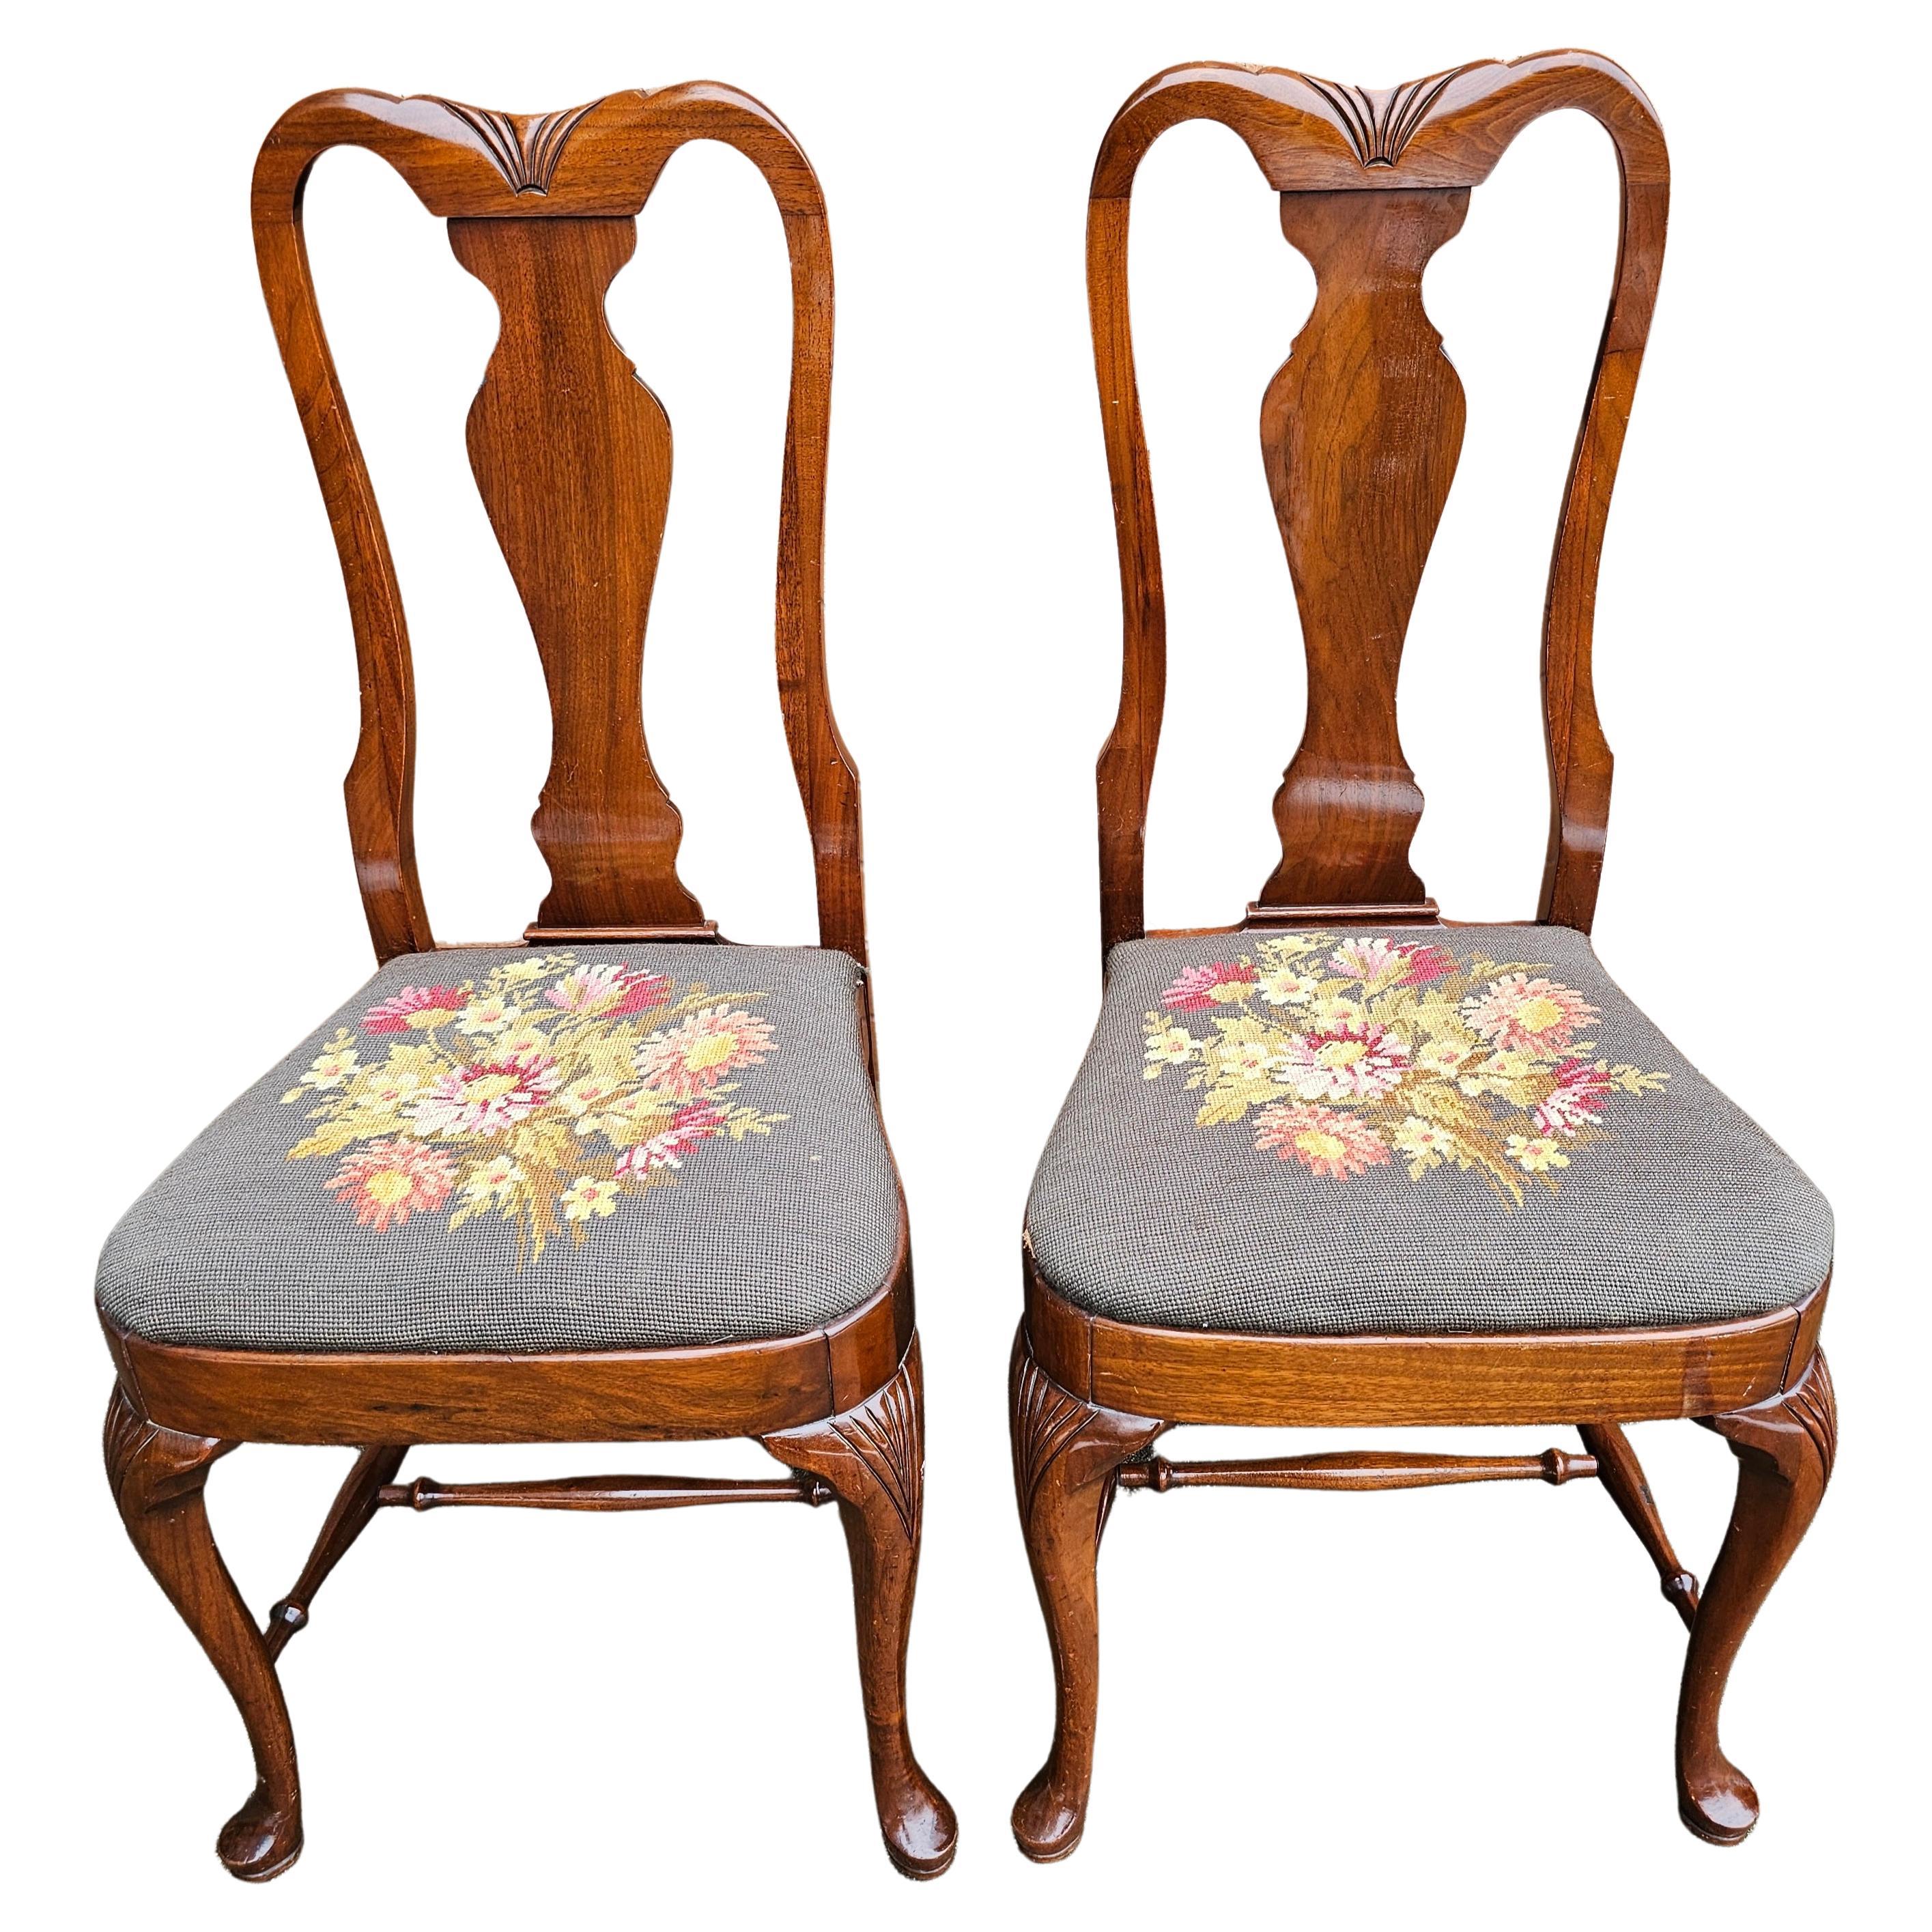 Une rare paire de Grand  Ledge Chair Company Chaises de salle à manger en acajou et sièges rembourrés au point d'aiguille dans le style Queen Anne. Etat de propreté et d'antiquité